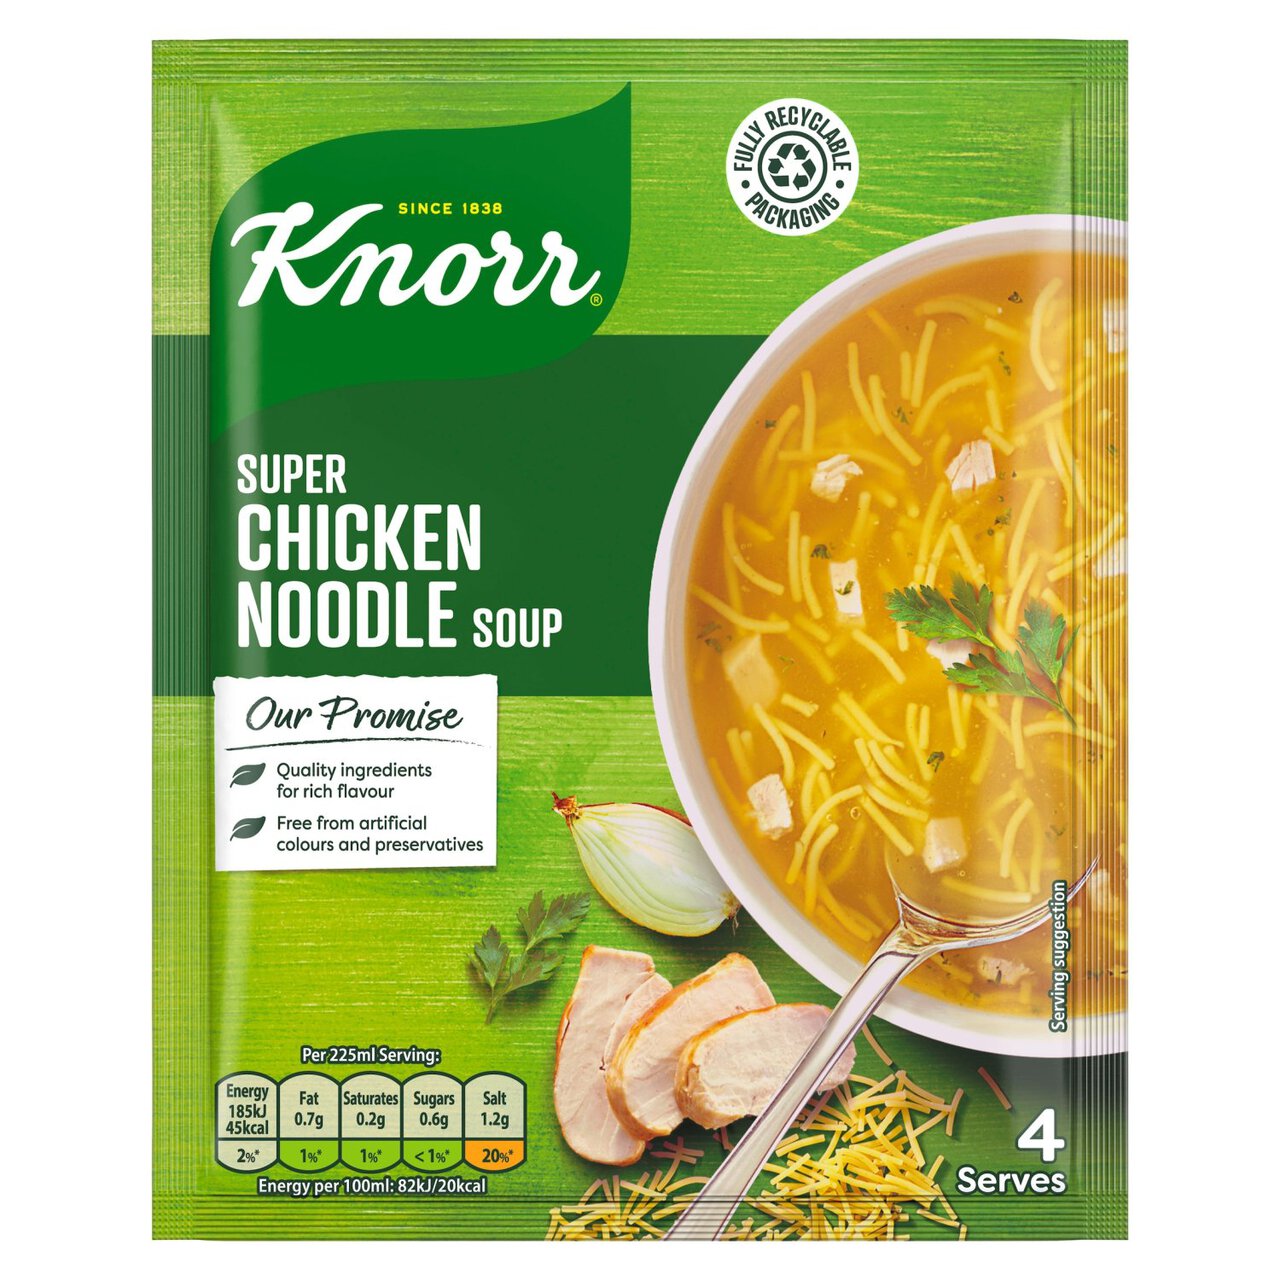 Knorr Super Chicken Noodle Soup 51g